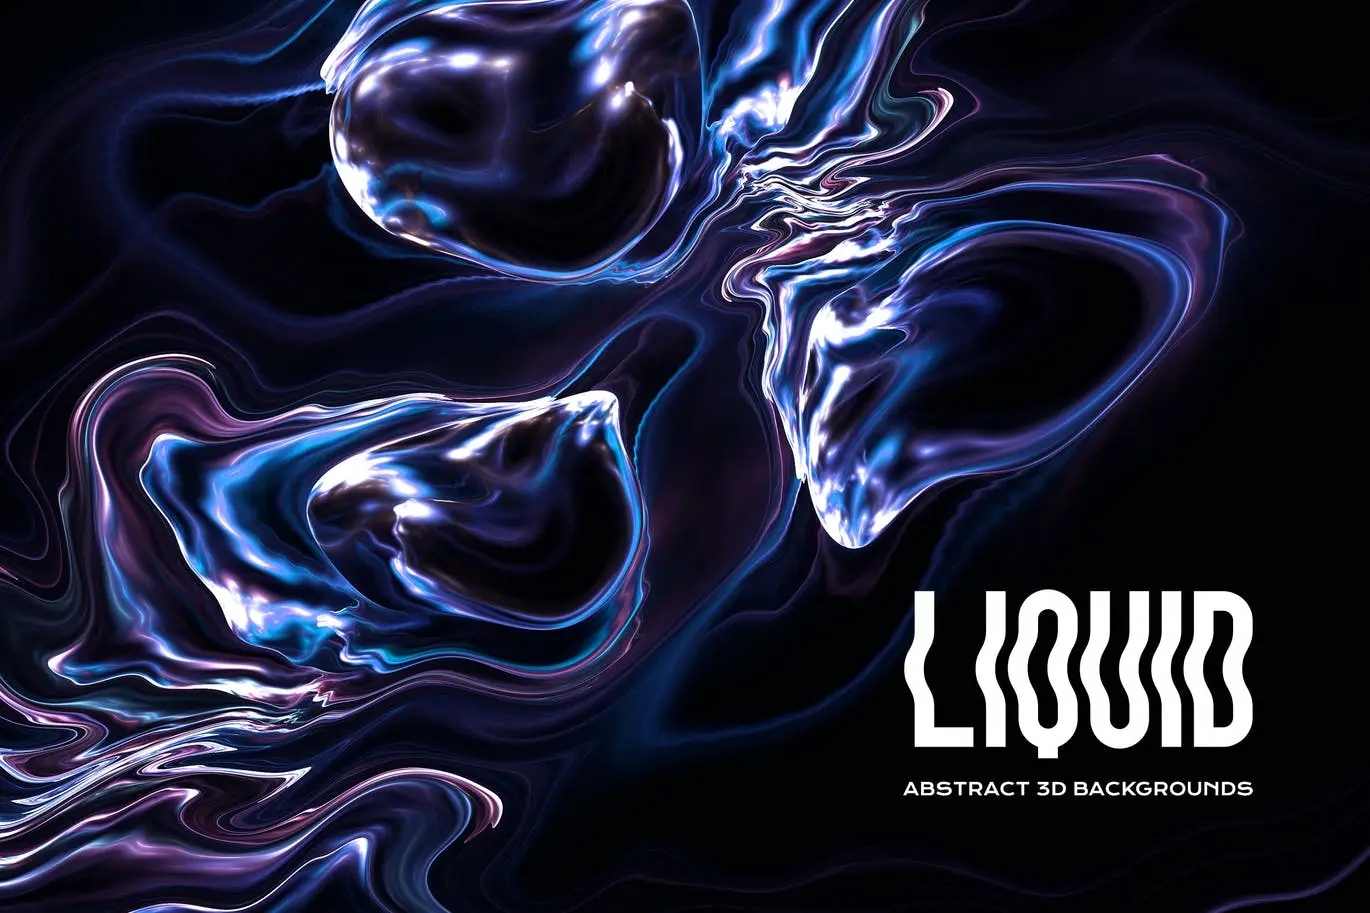 时尚高端抽象3D立体液体流体背景底纹纹理集合插图